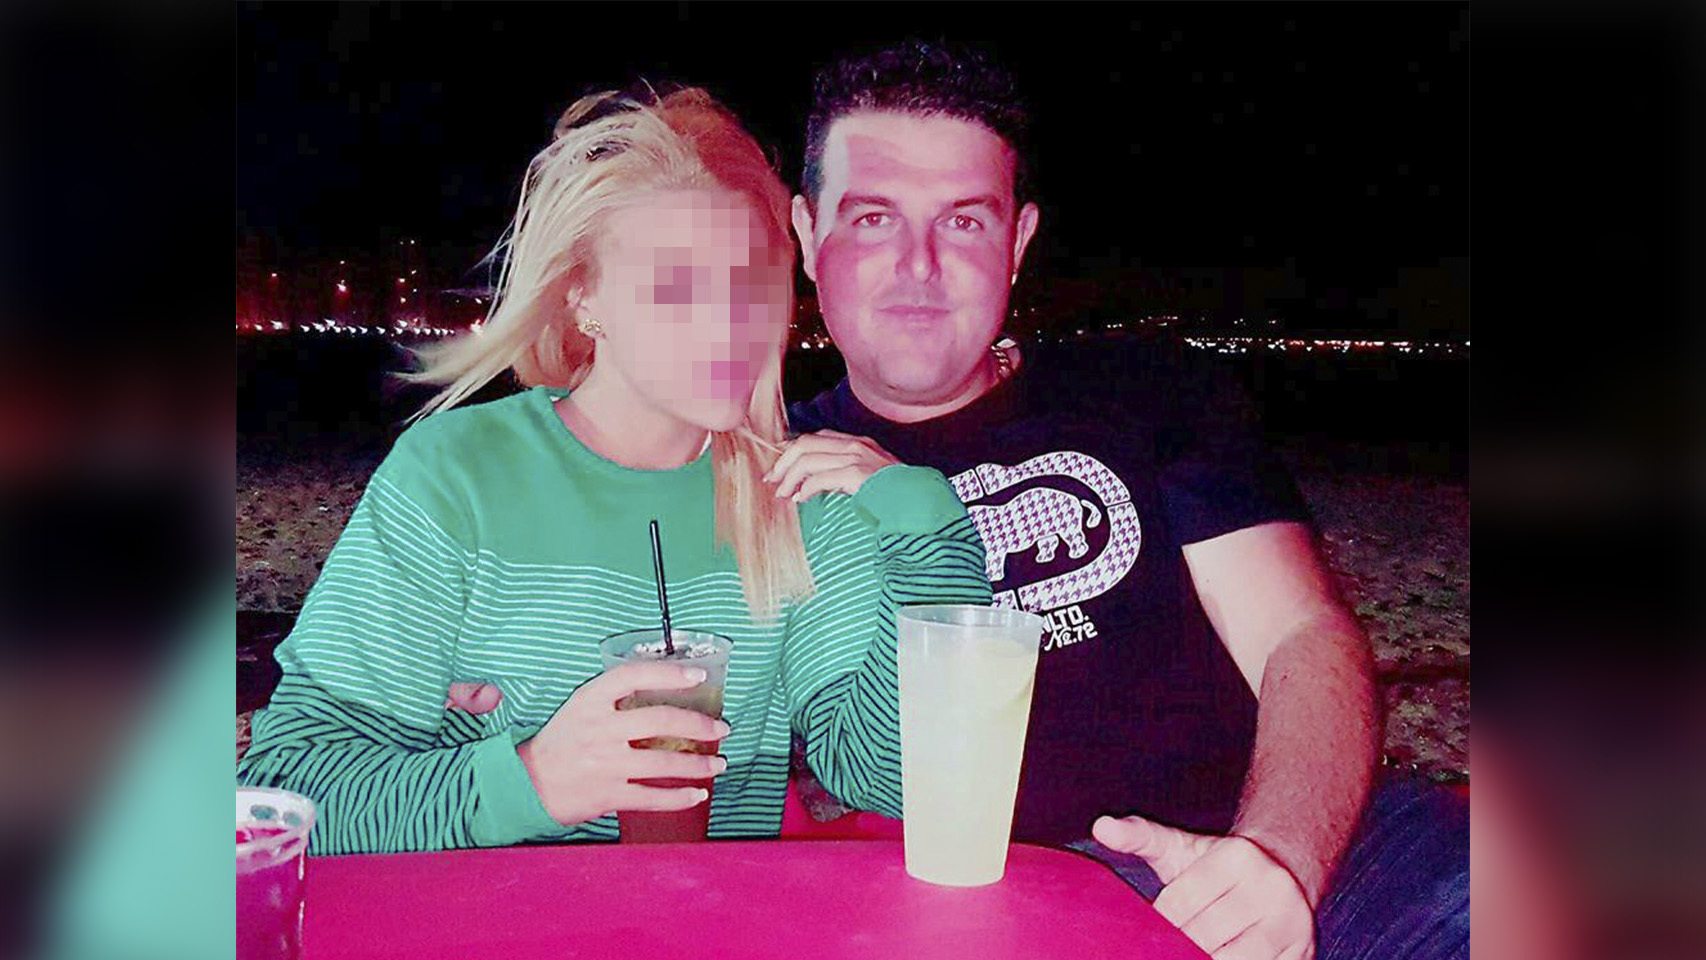 Julián se vengó de su novia por dejarle publicando sus fotos sexuales en un perfil falso de Facebook imagen